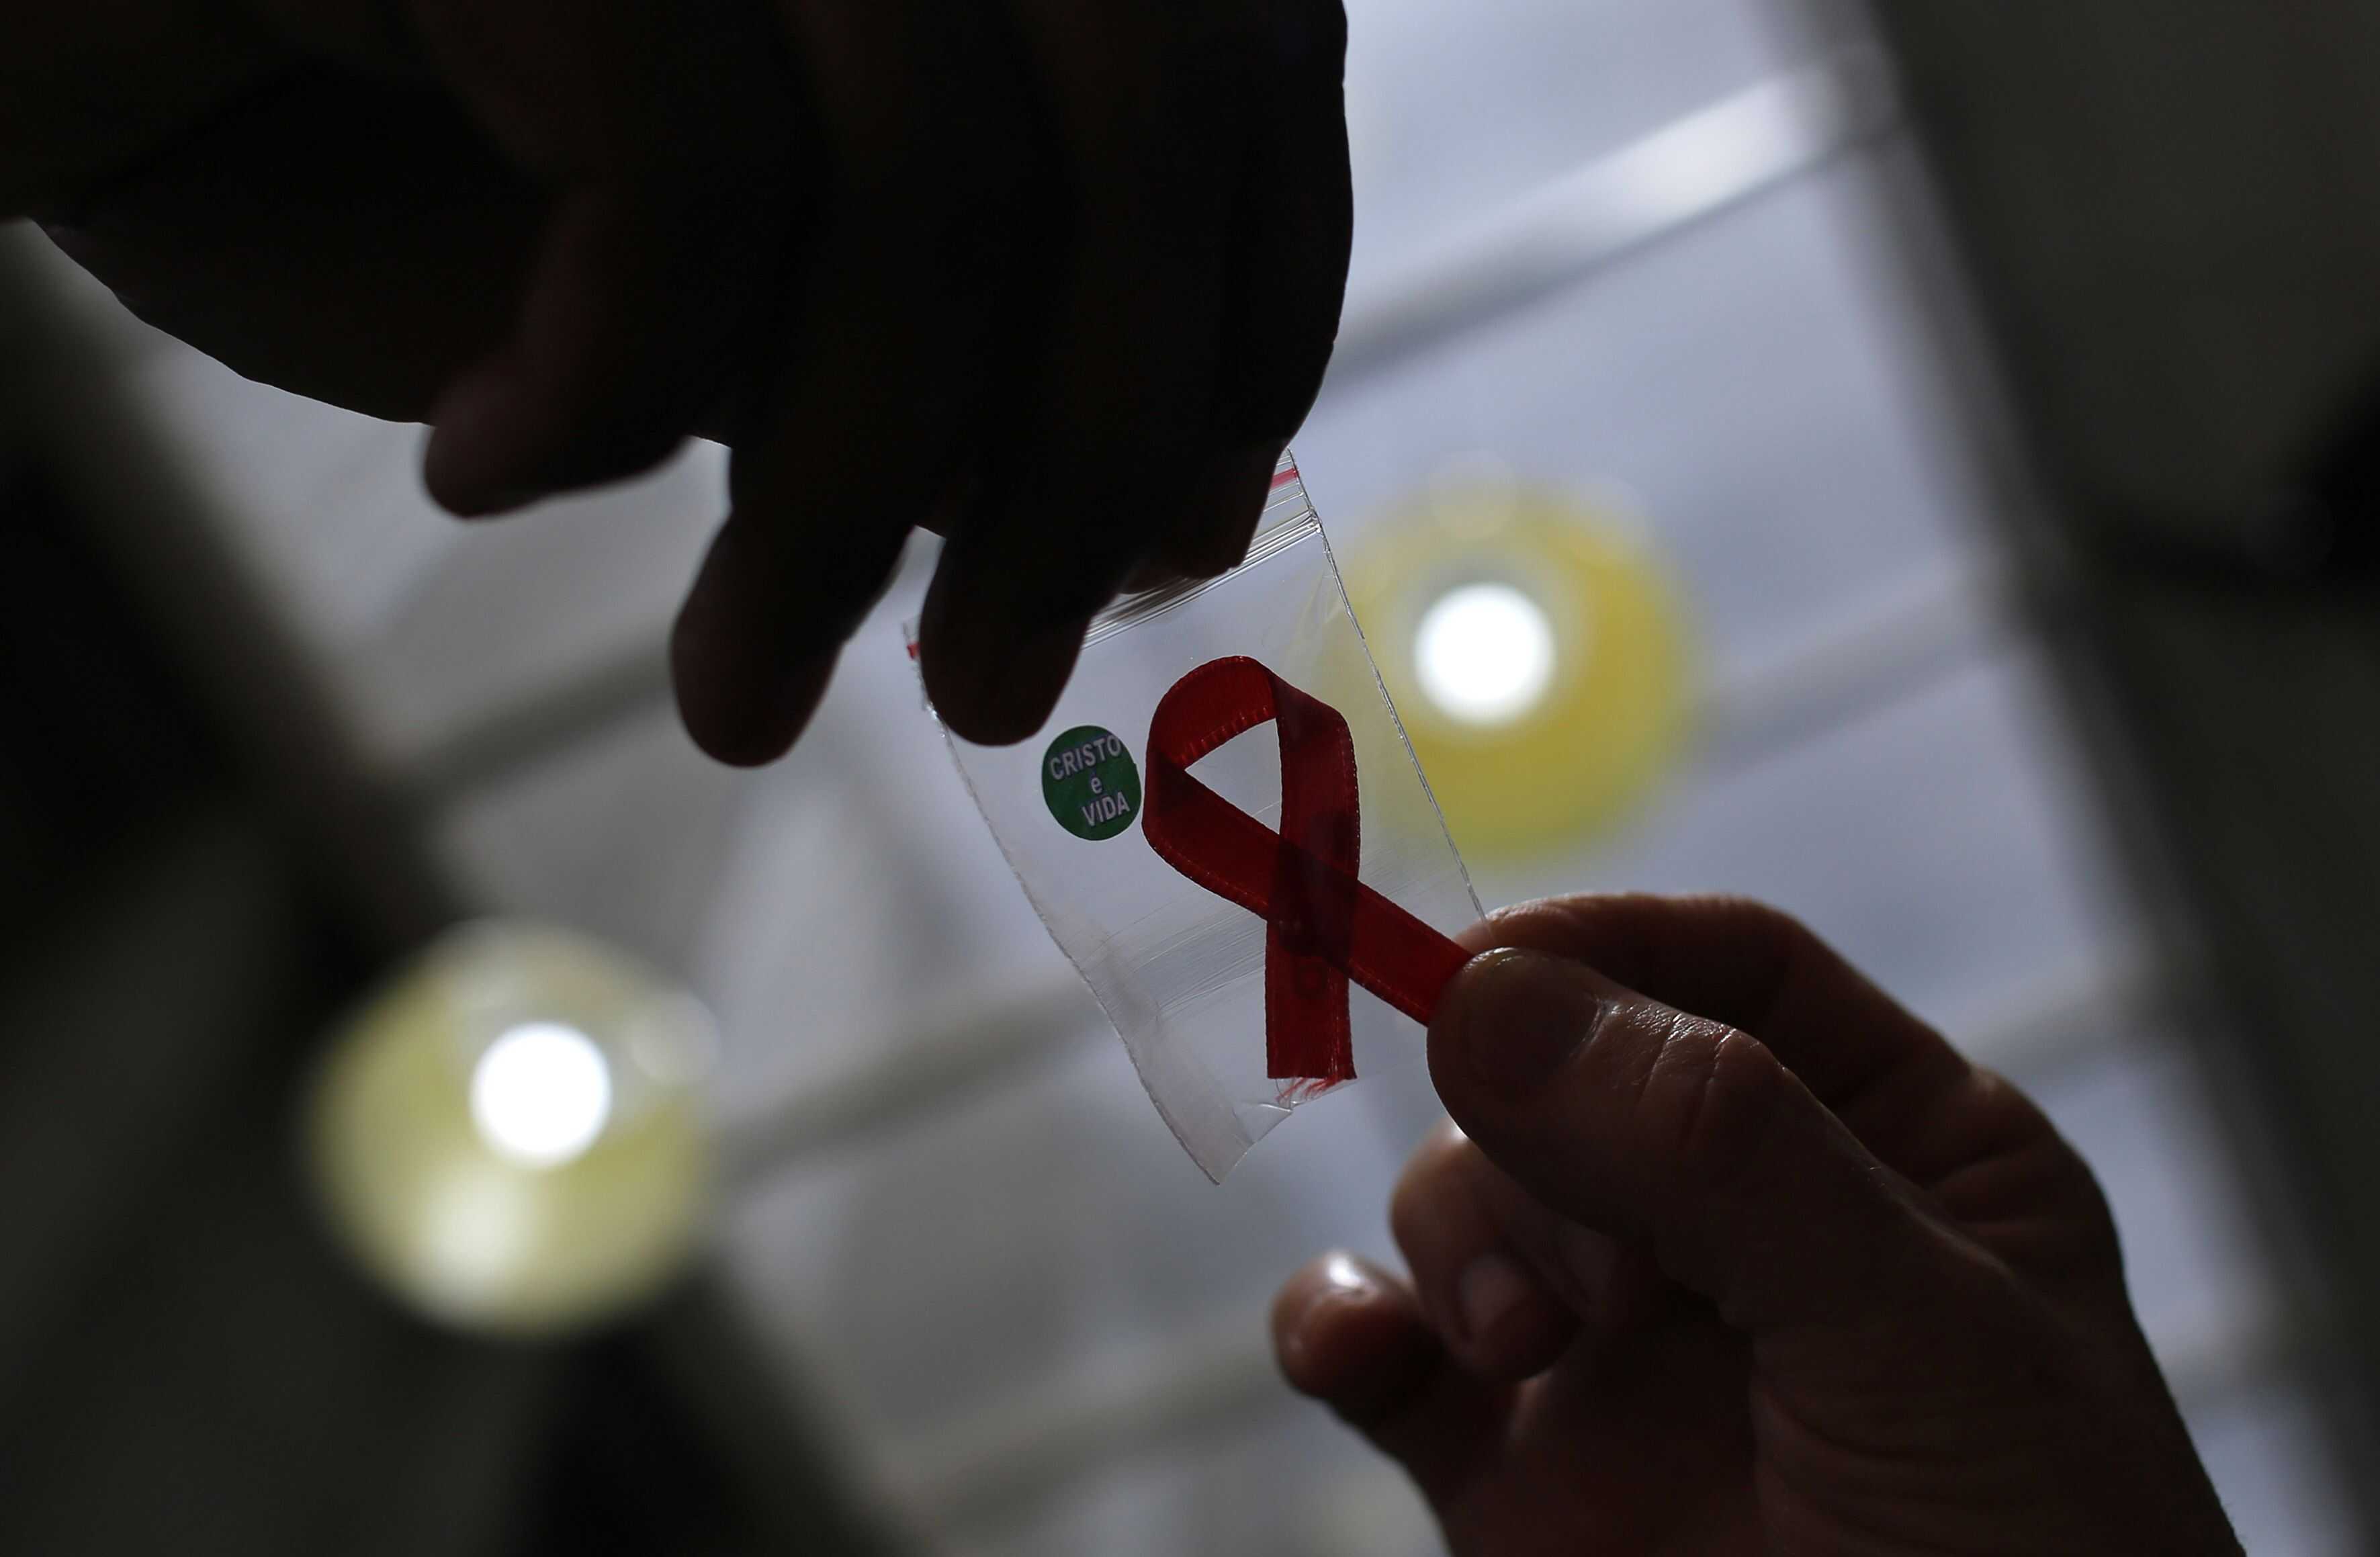 Kasus HIV-AIDS di Garut Meningkat, Mayoritas Akibat Hubungan Sesama Jenis